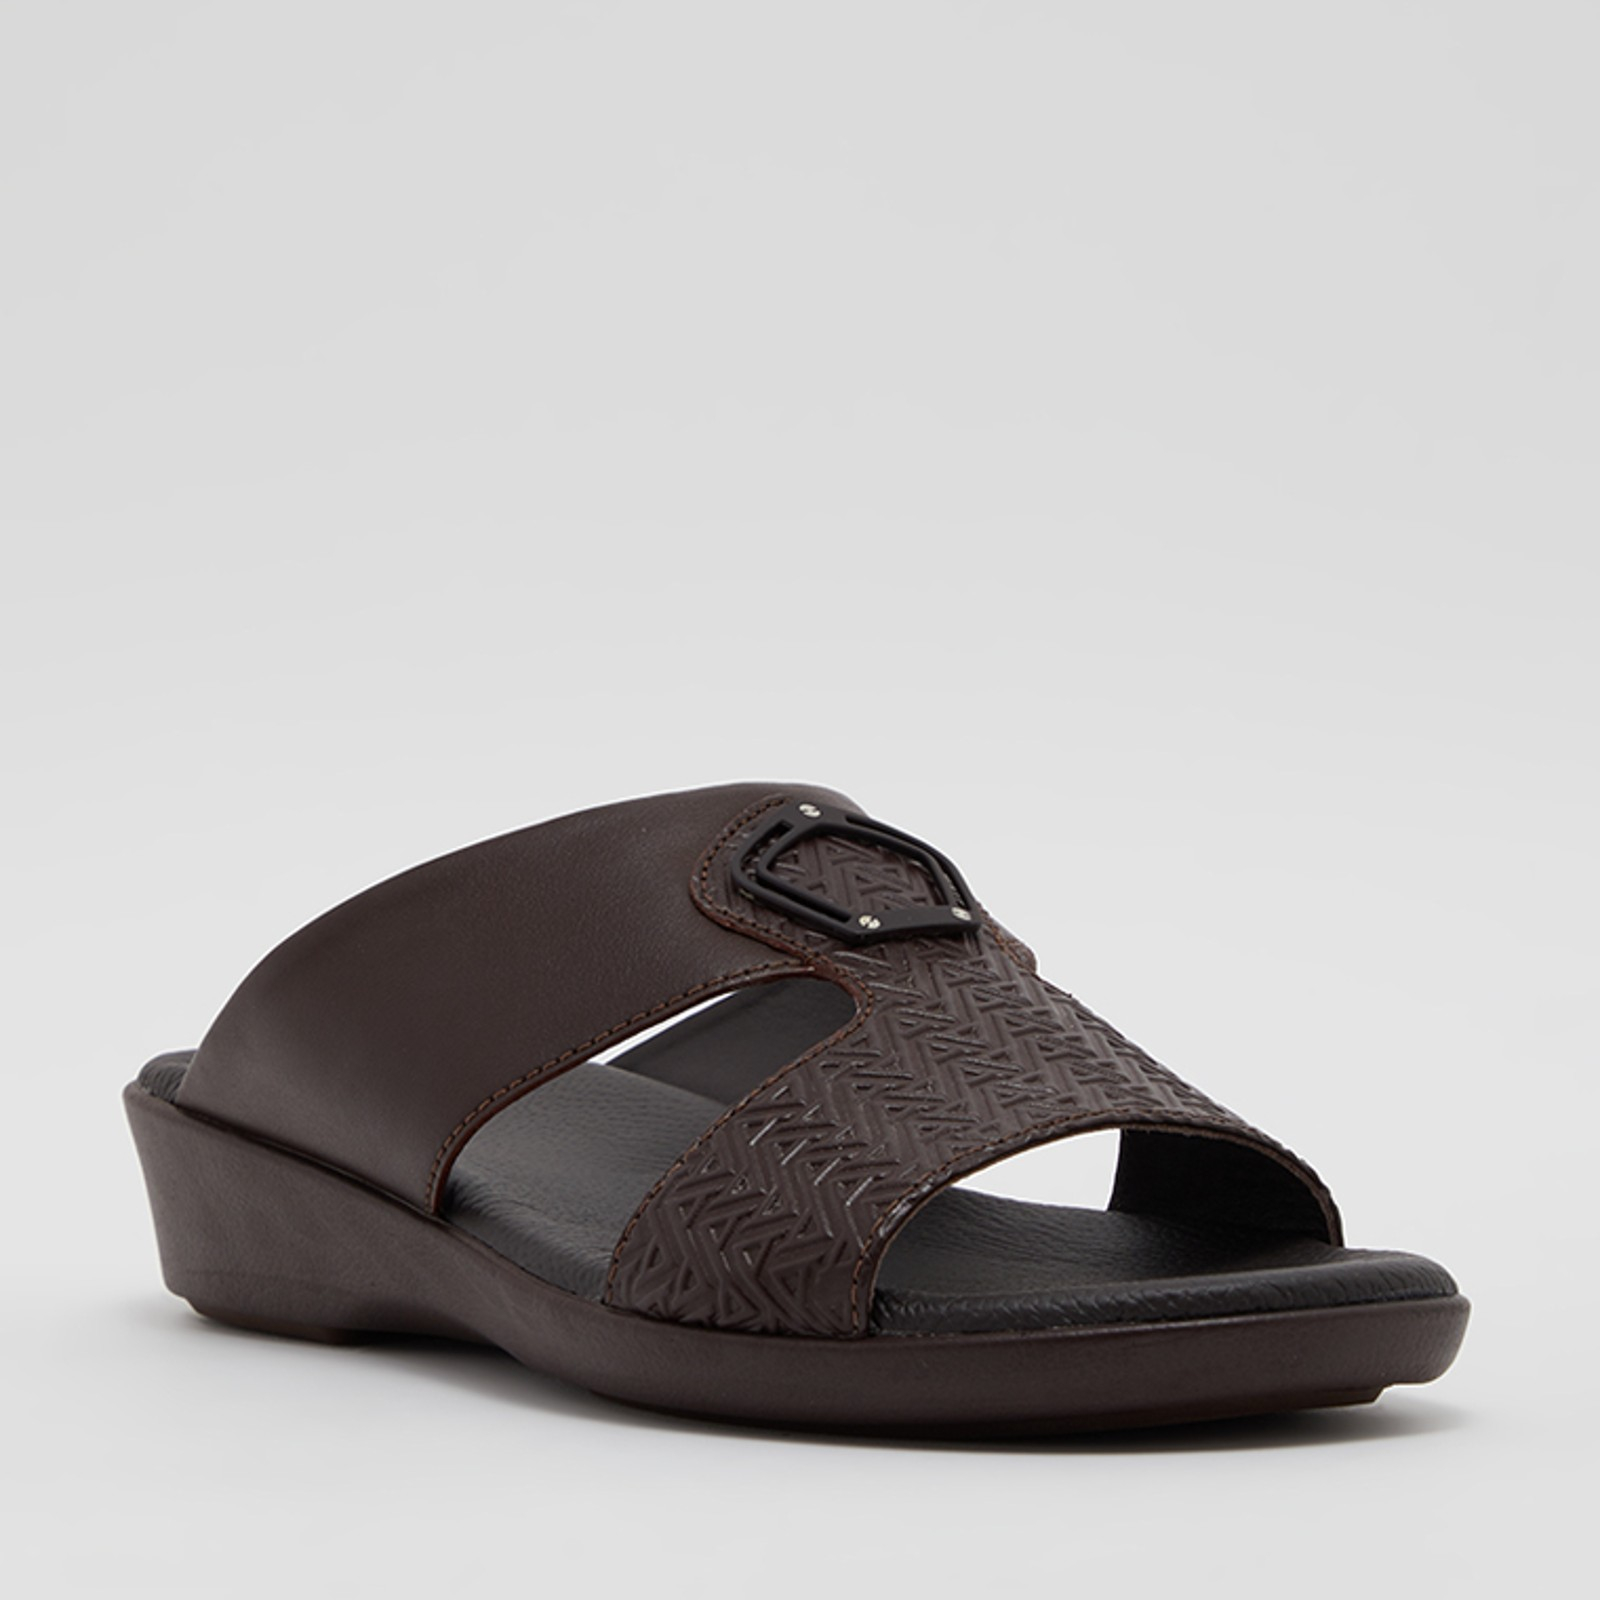 ALDO | Shoes, Boots, Sandals, Handbags & Accessories | Gents shoes, Best  shoes for men, Mens casual shoes